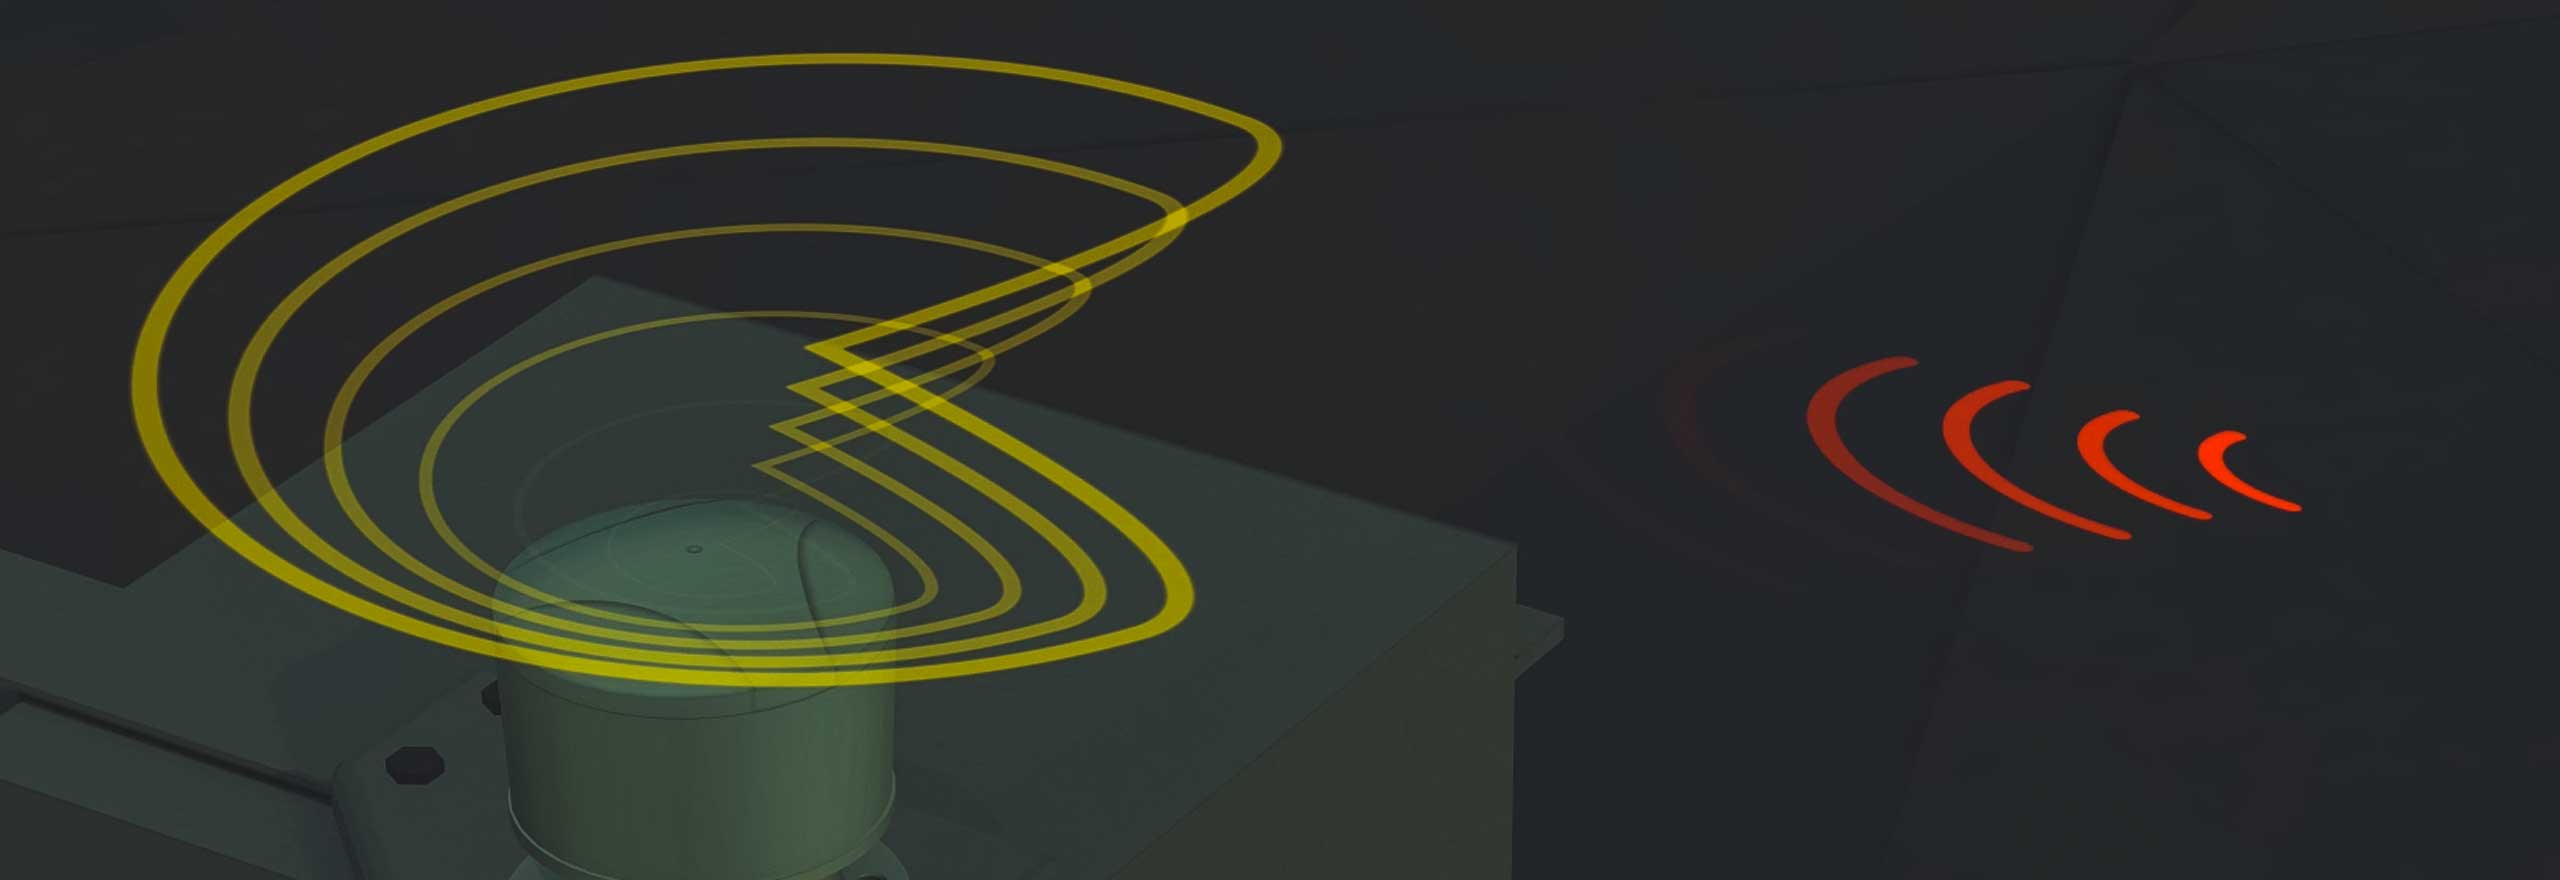 Image animée montrant comment la technologie GPS anti-brouillage identifie et atténue les interférences et les brouillages.